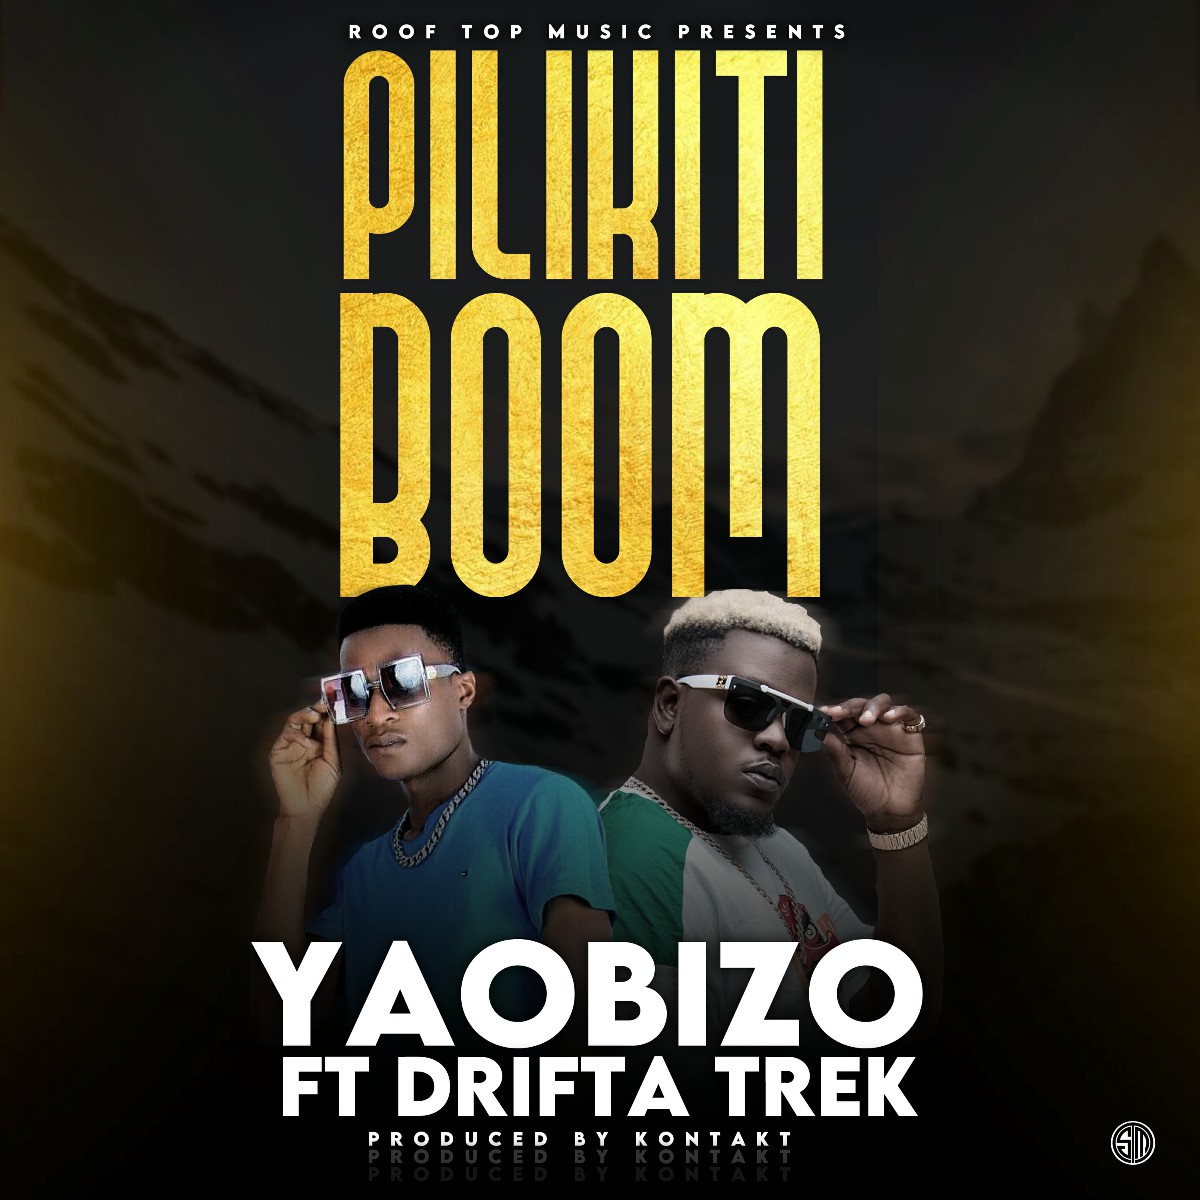 Yaobizo ft. Drifta Trek - Pilikiti Boom